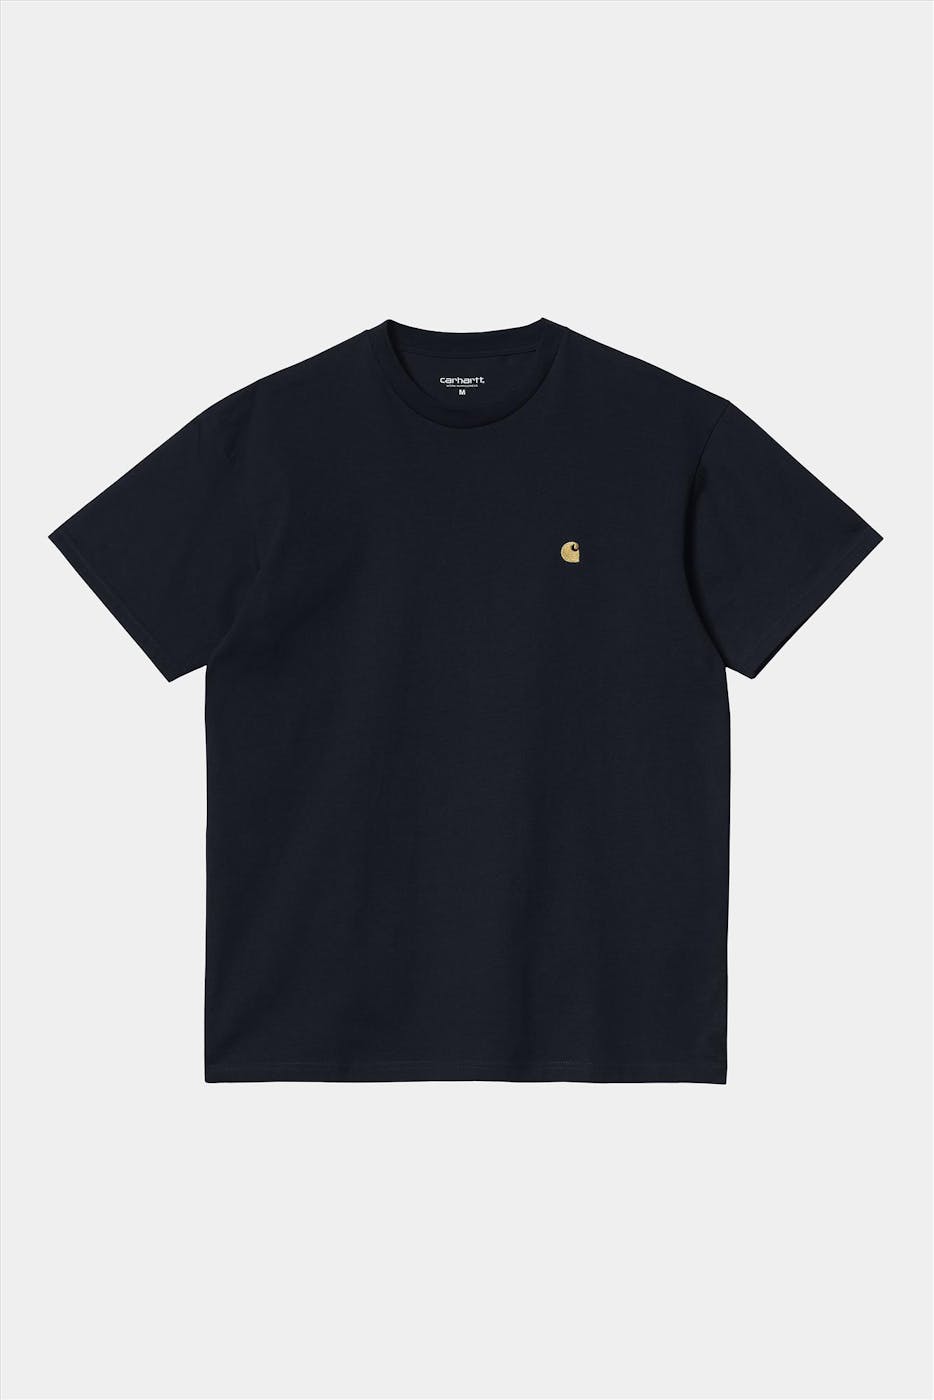 Carhartt WIP - Donkerblauwe Chase T-shirt